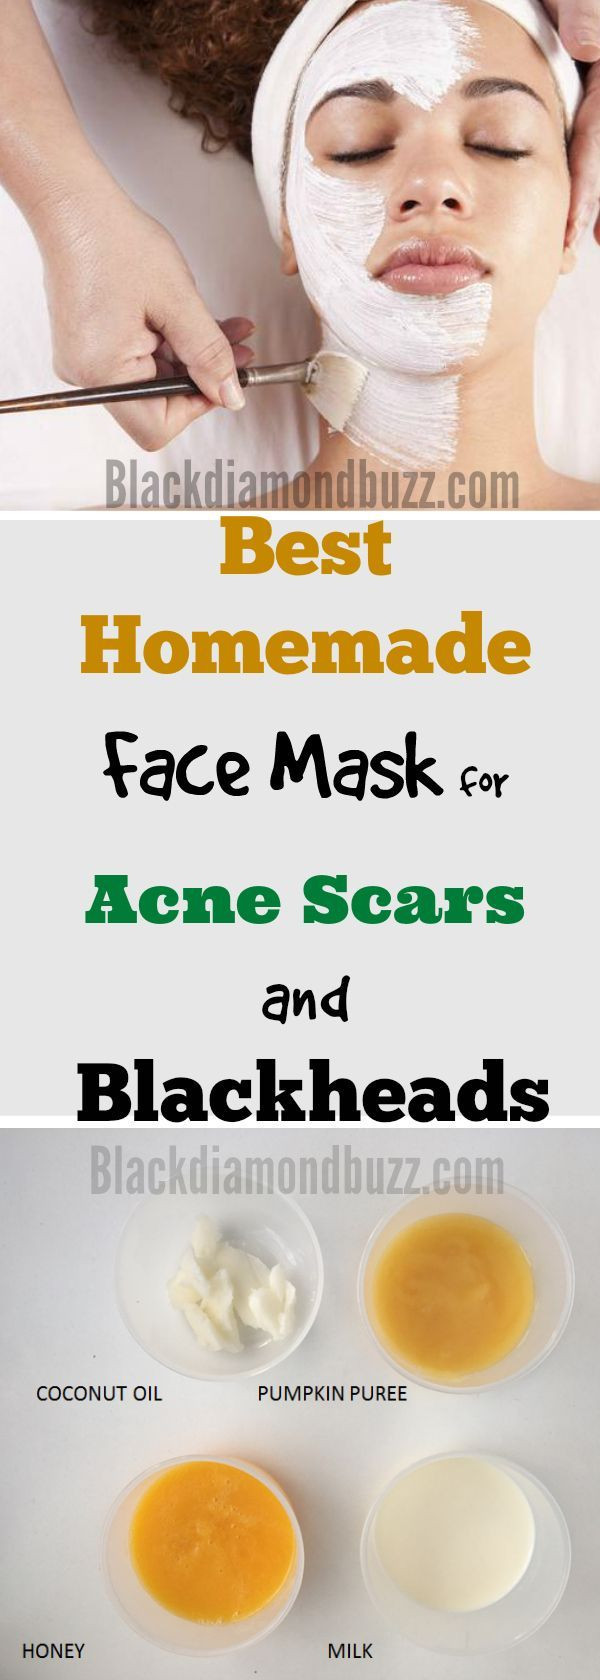 Acne DIY Mask
 DIY Face Mask for Acne